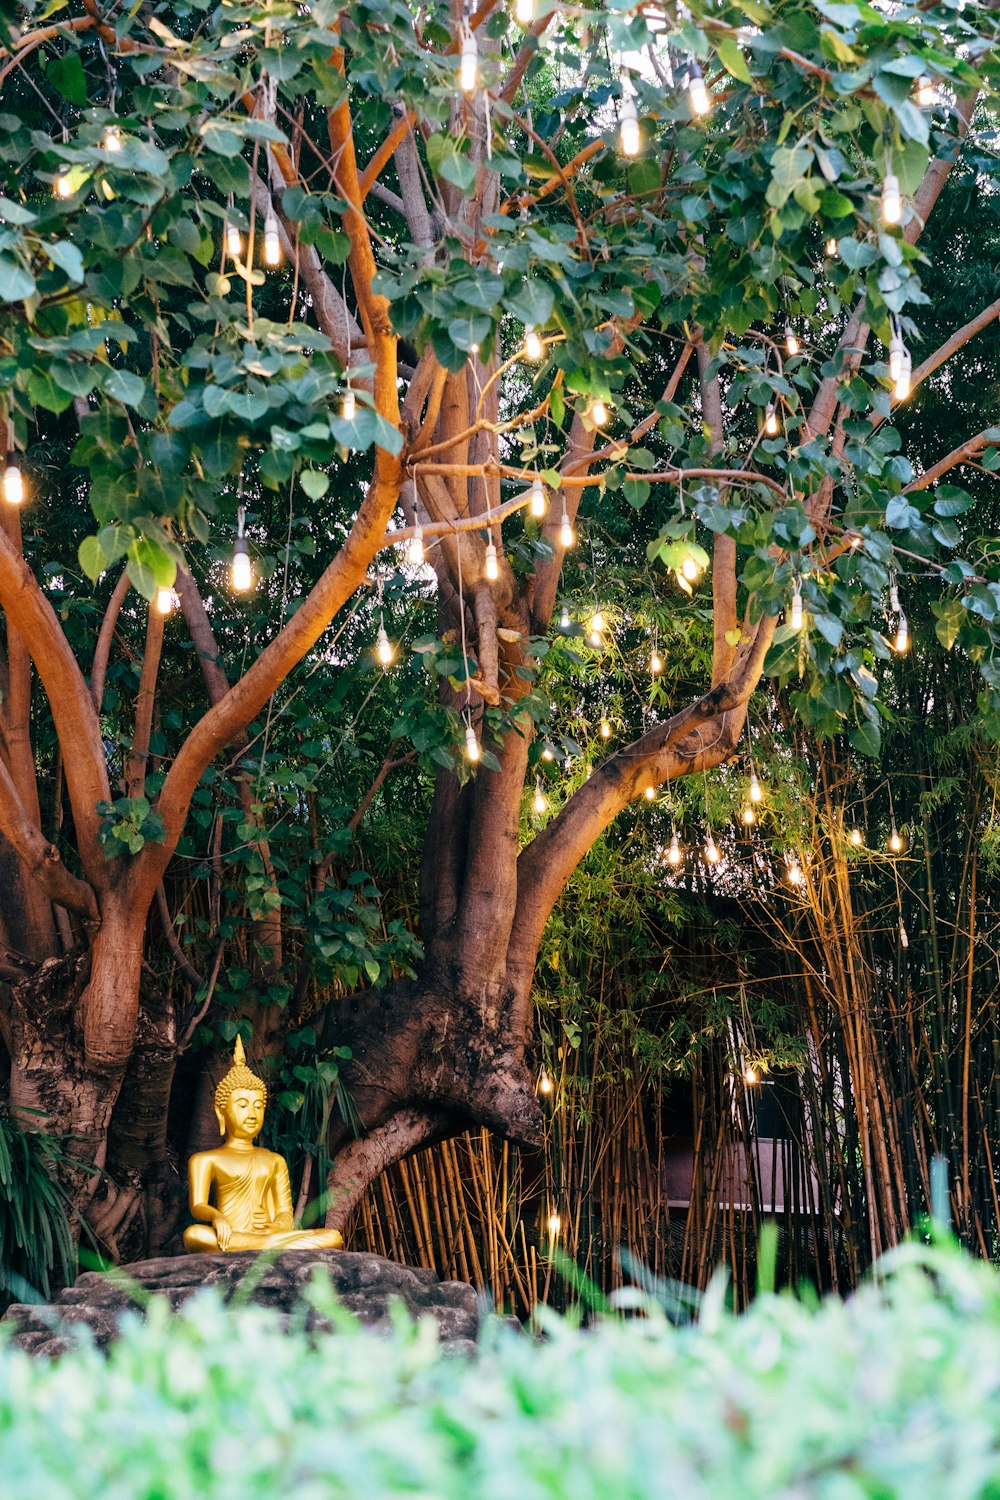 Gautama Buddha statue near green tree